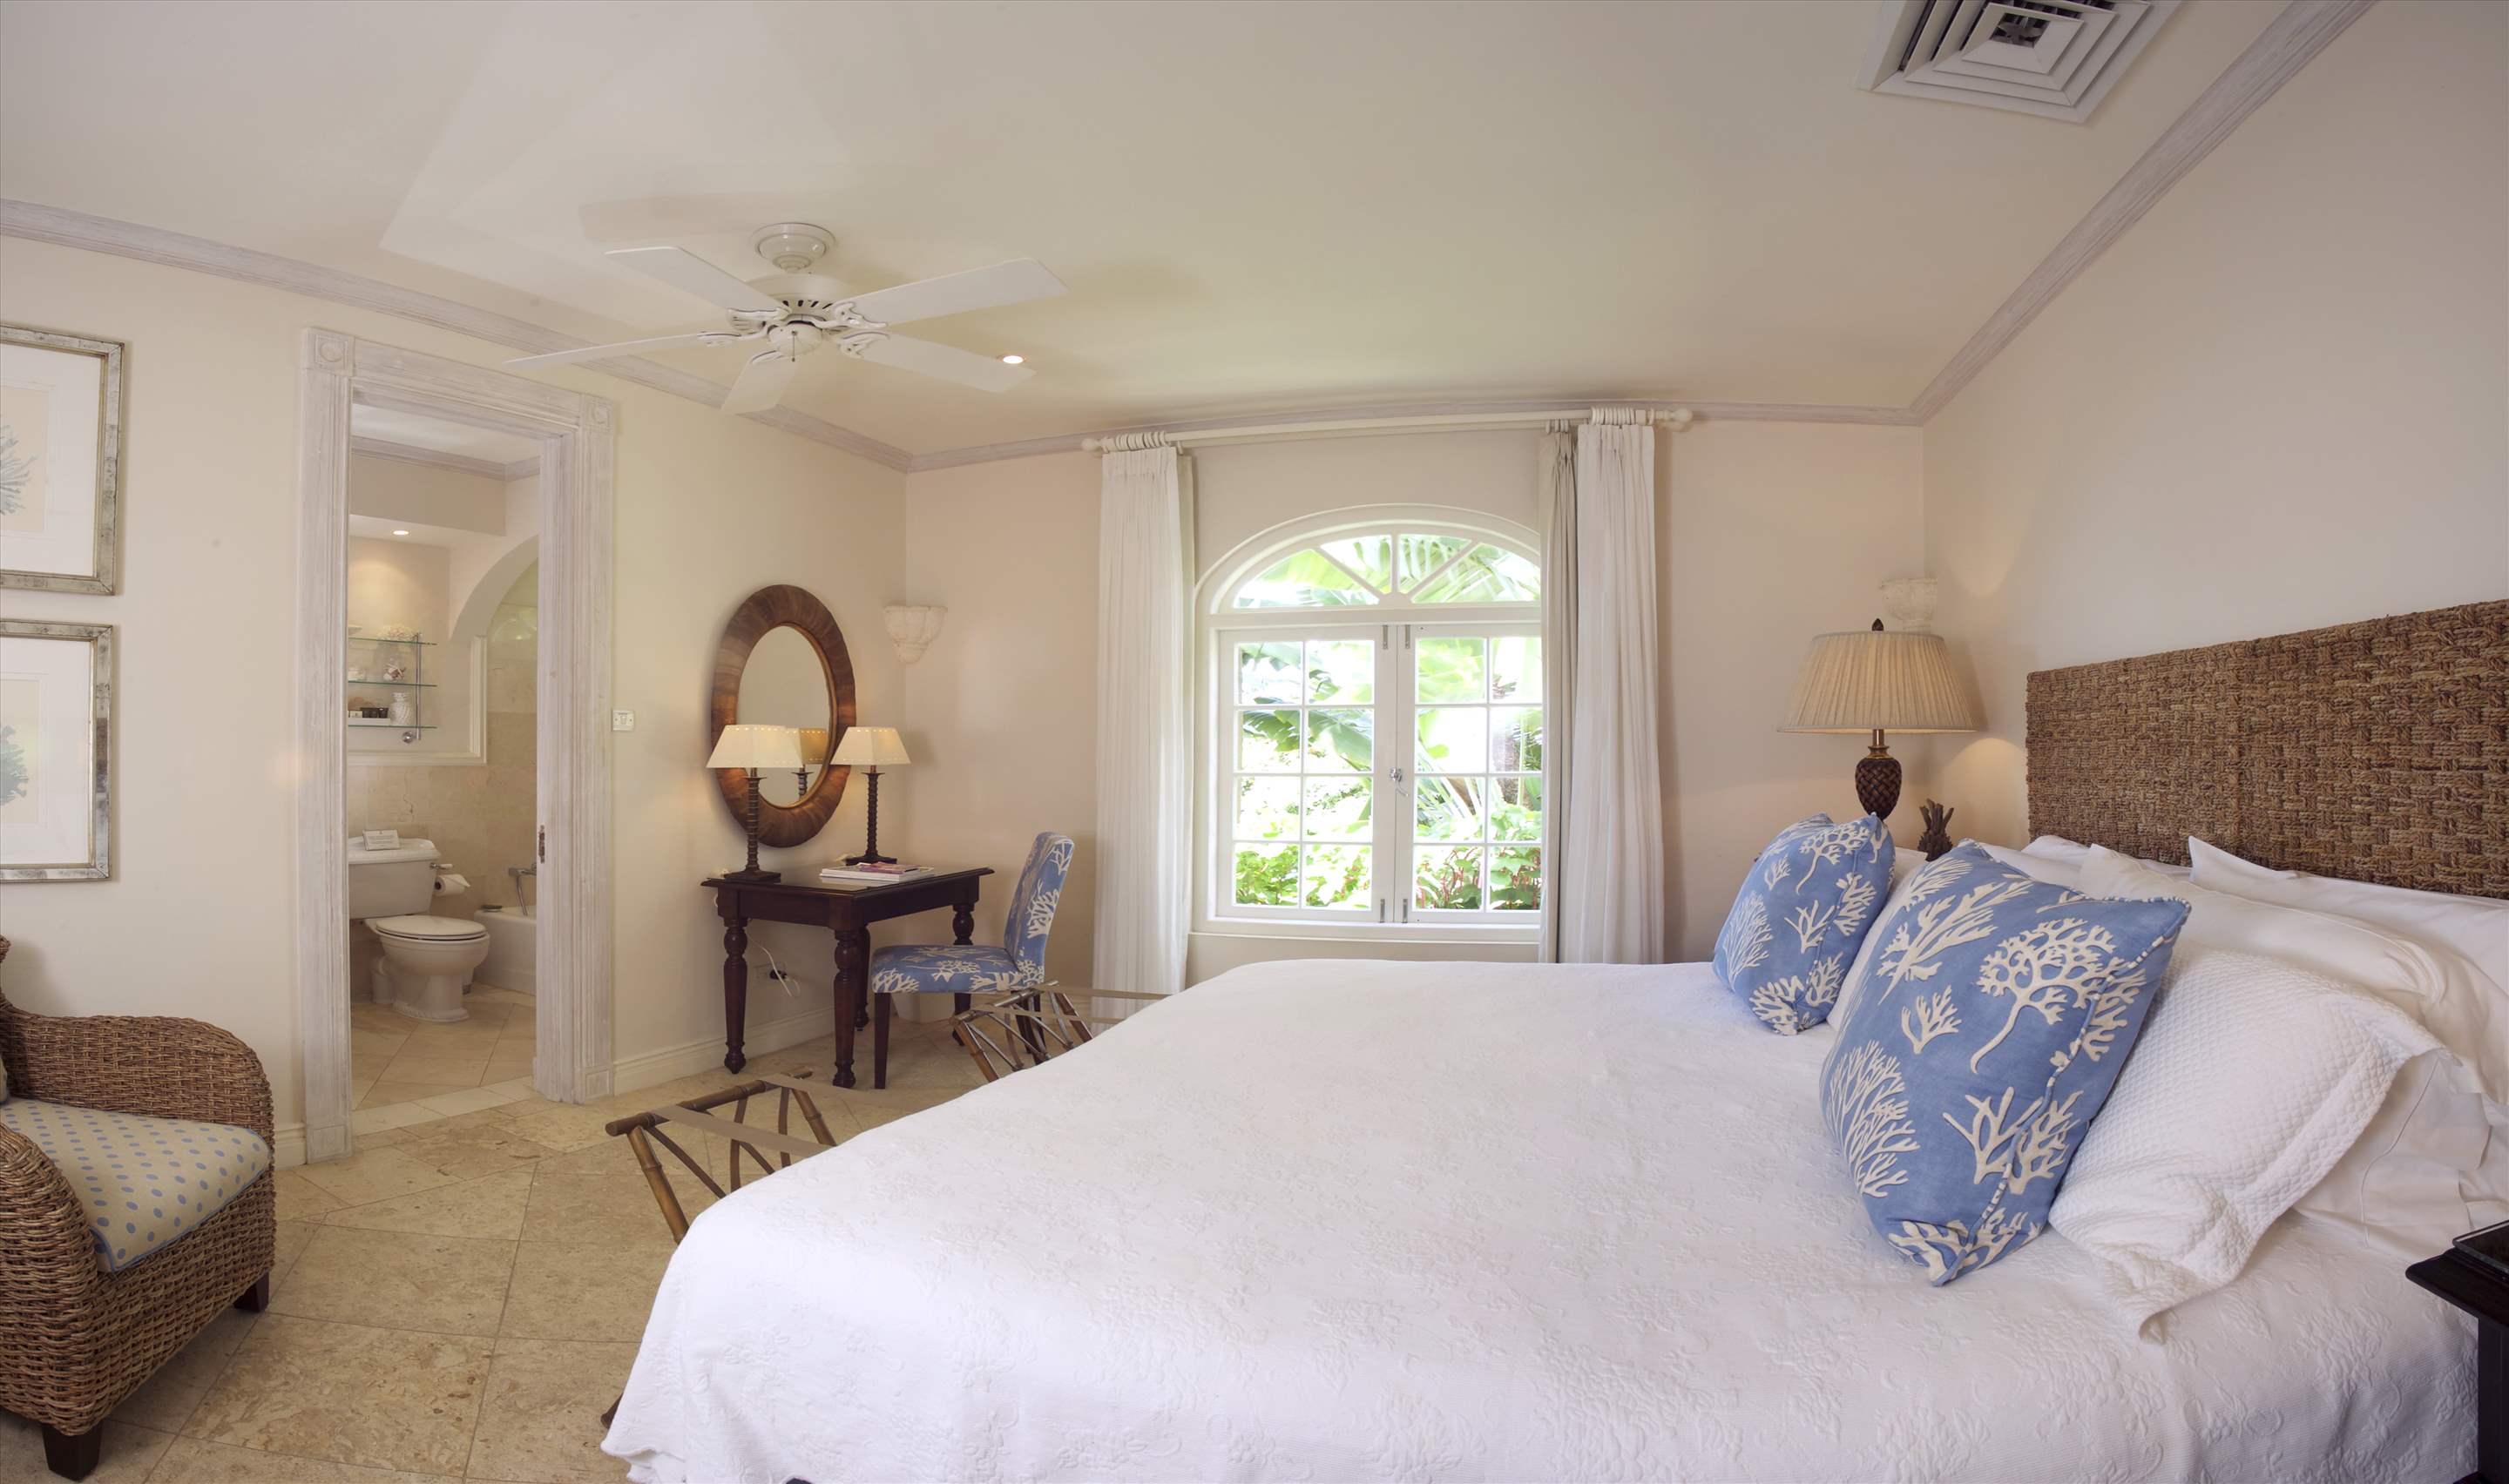 Plantation House, Royal Westmoreland, 4 bedroom, 4 bedroom villa in St. James & West Coast, Barbados Photo #20